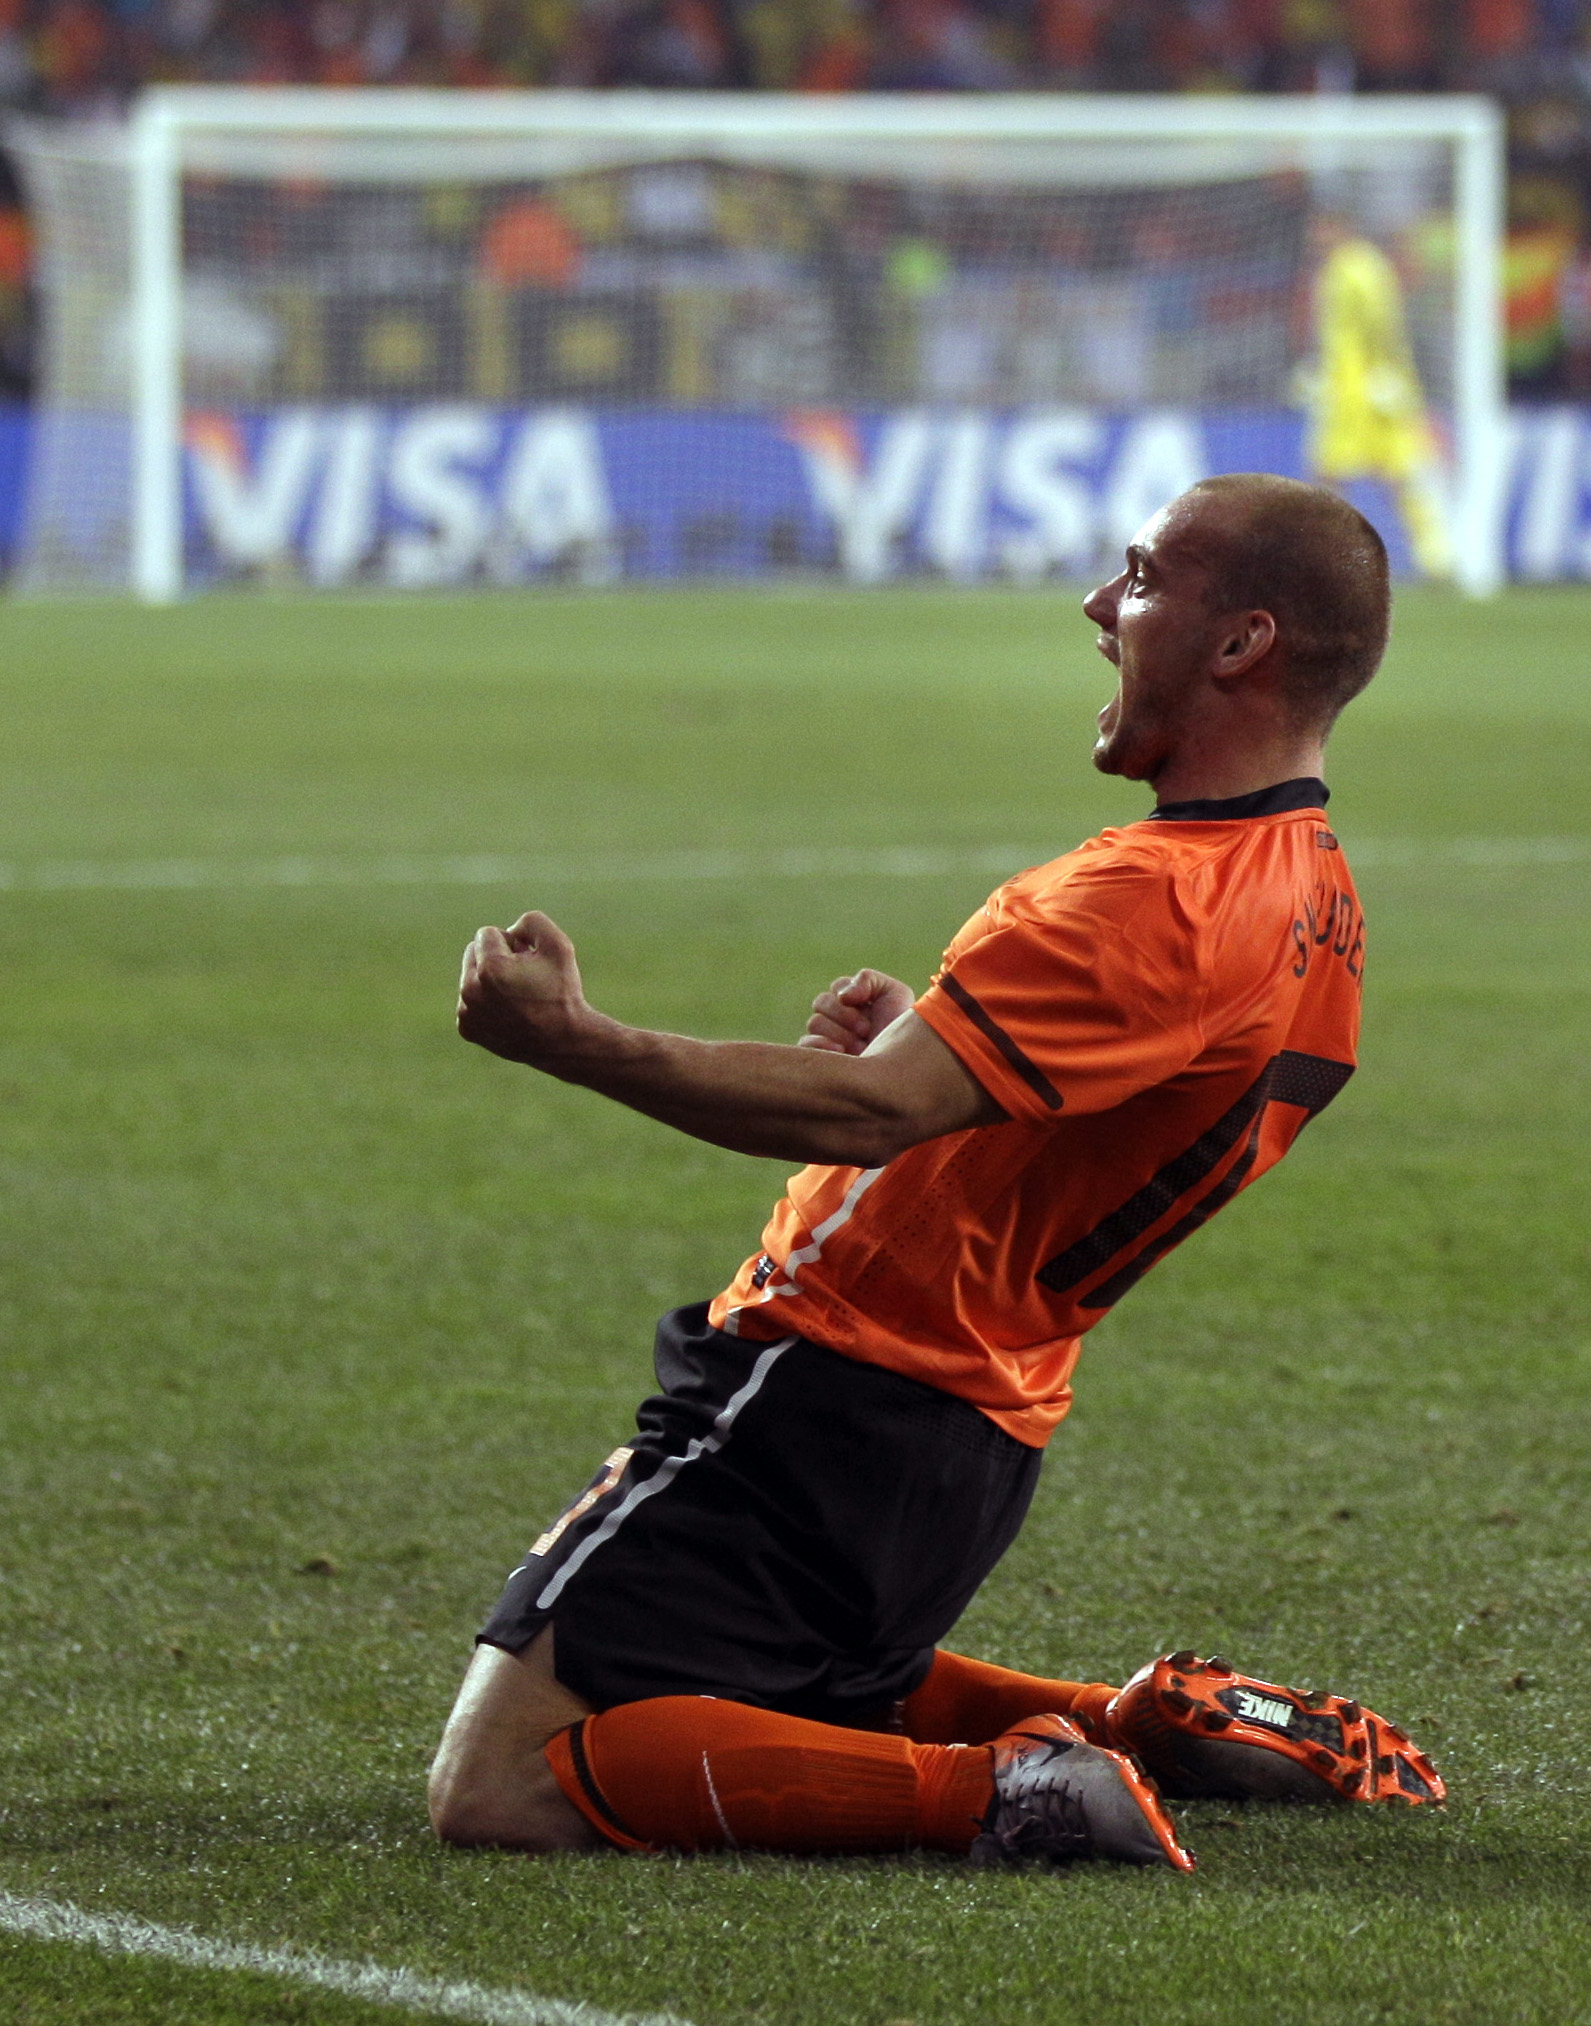 Sneijder avgjorde kvartsfinalen och skickade hem Brasilien från VM med sitt 2-1-mål.